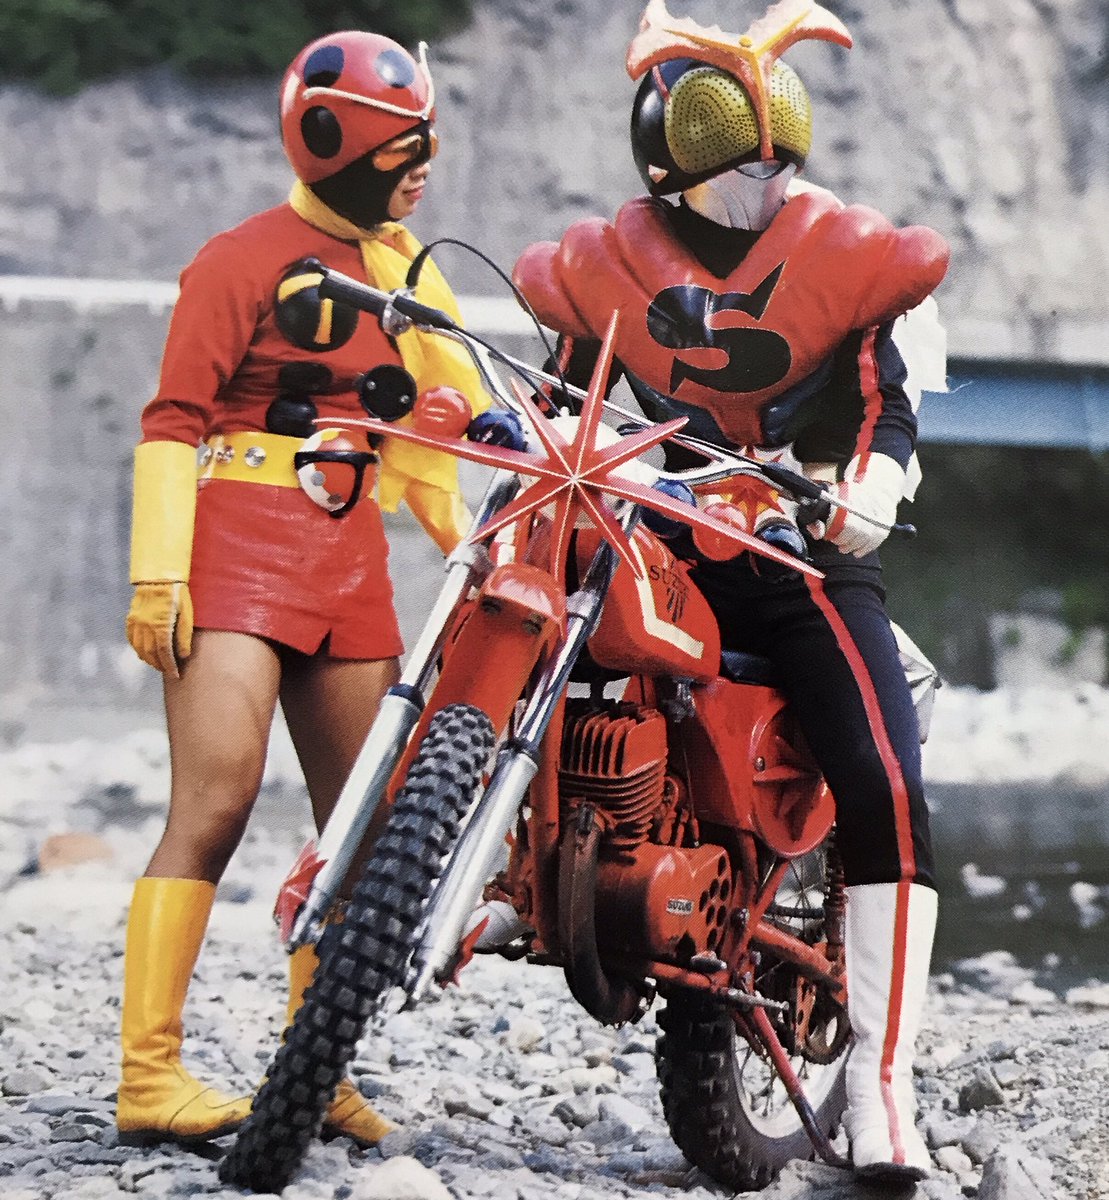 Imagem: O Kamen Rider Stronger na motoca.